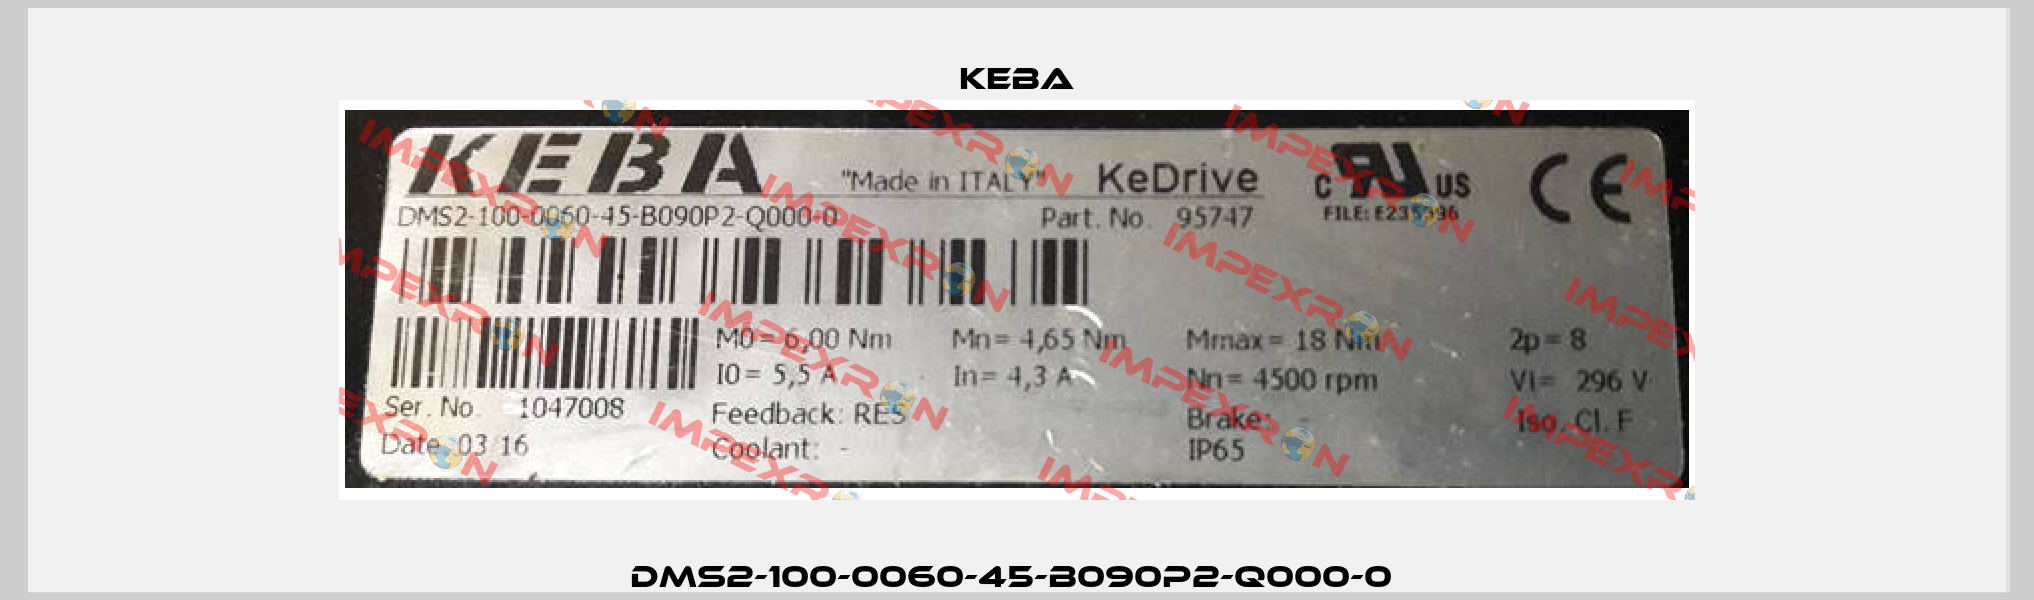 DMS2-100-0060-45-B090P2-Q000-0  Keba